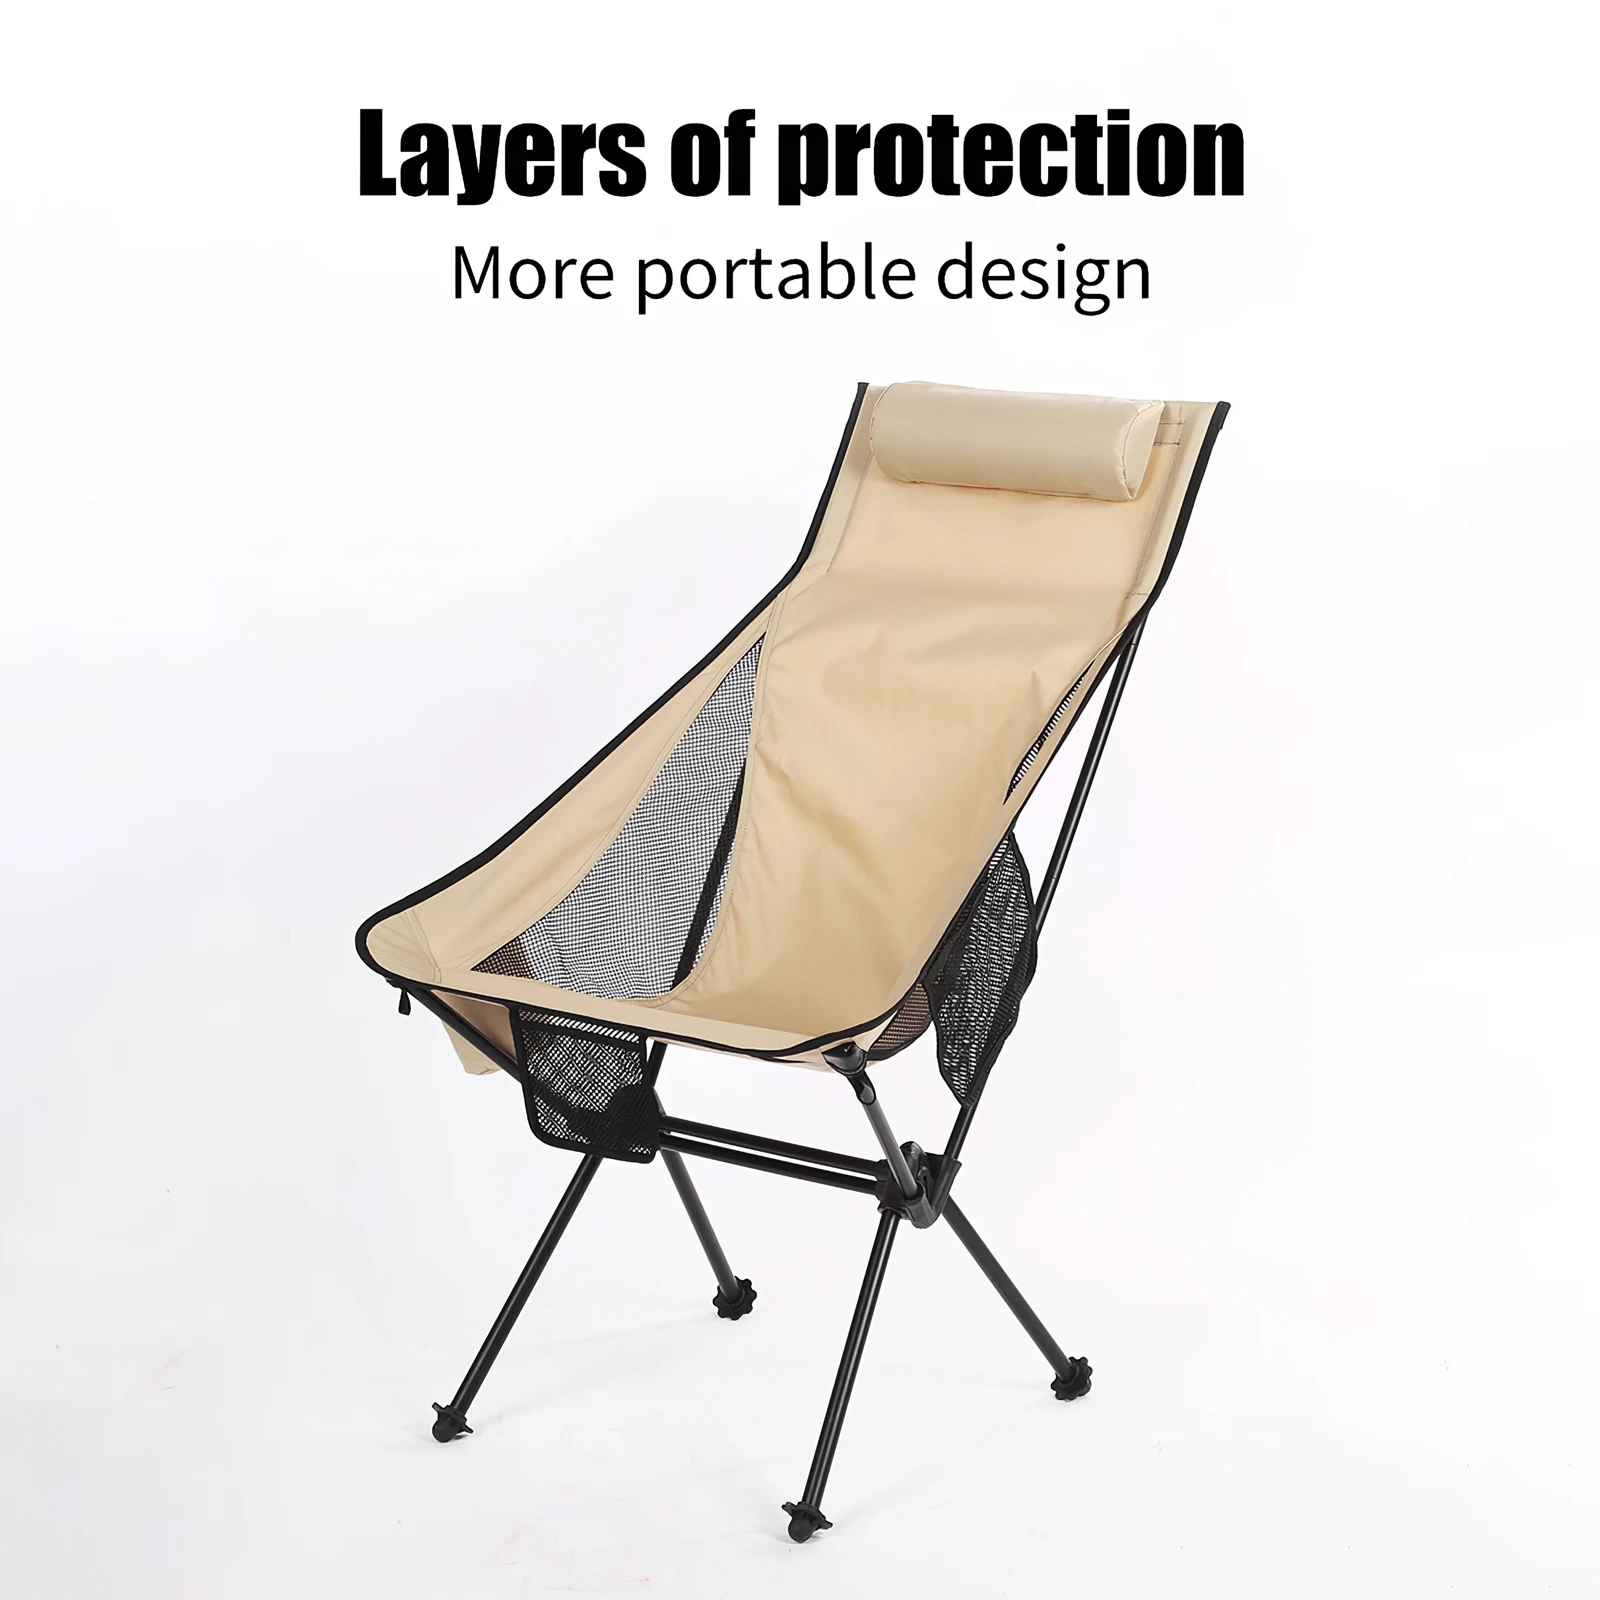 저렴한 초경량 야외 접이식 캠핑 의자, 피크닉 하이킹 여행 레저 배낭 달 관측 낚시 휴대용 의자